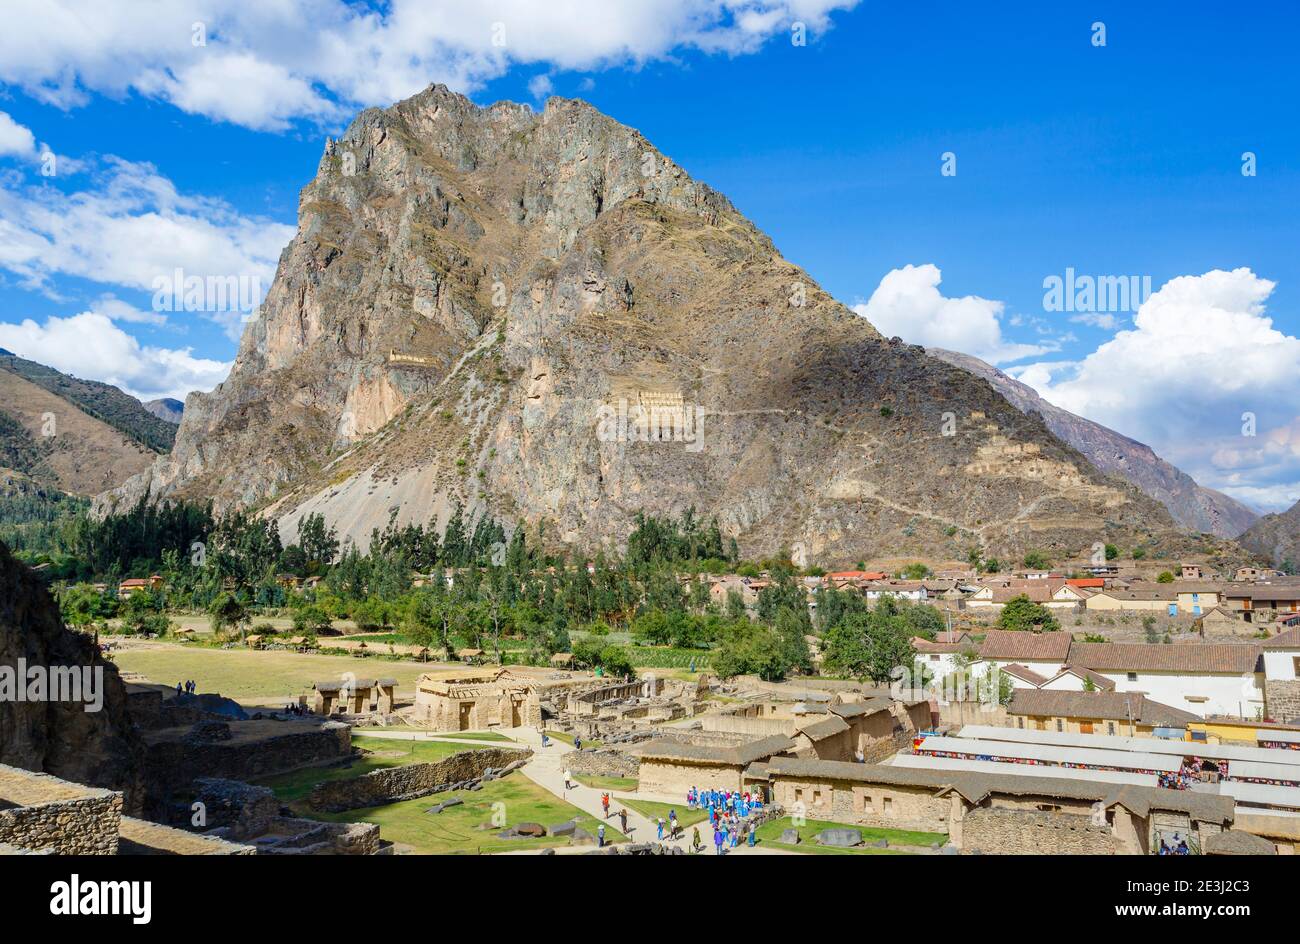 Blick auf den Pinkuylluna Berg von den Terrassen in Ollantaytambo, einer archäologischen Stätte der Inka im Heiligen Tal in Urubamba, Cusco Region, Südperu Stockfoto